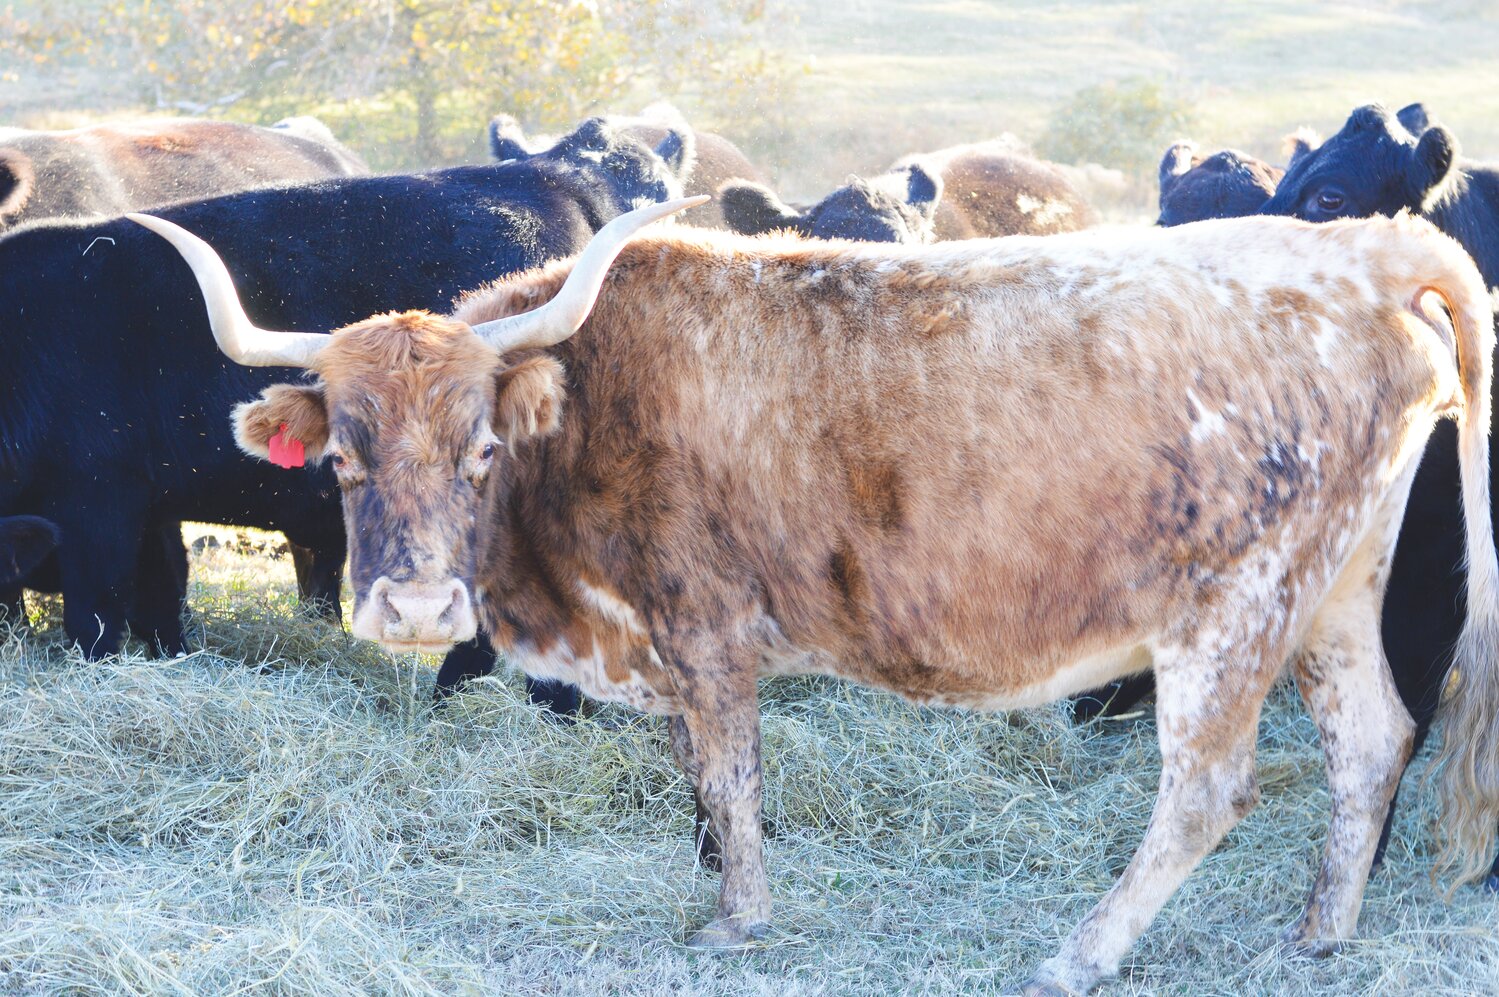 This longhorn steer is a Harris family favorite.